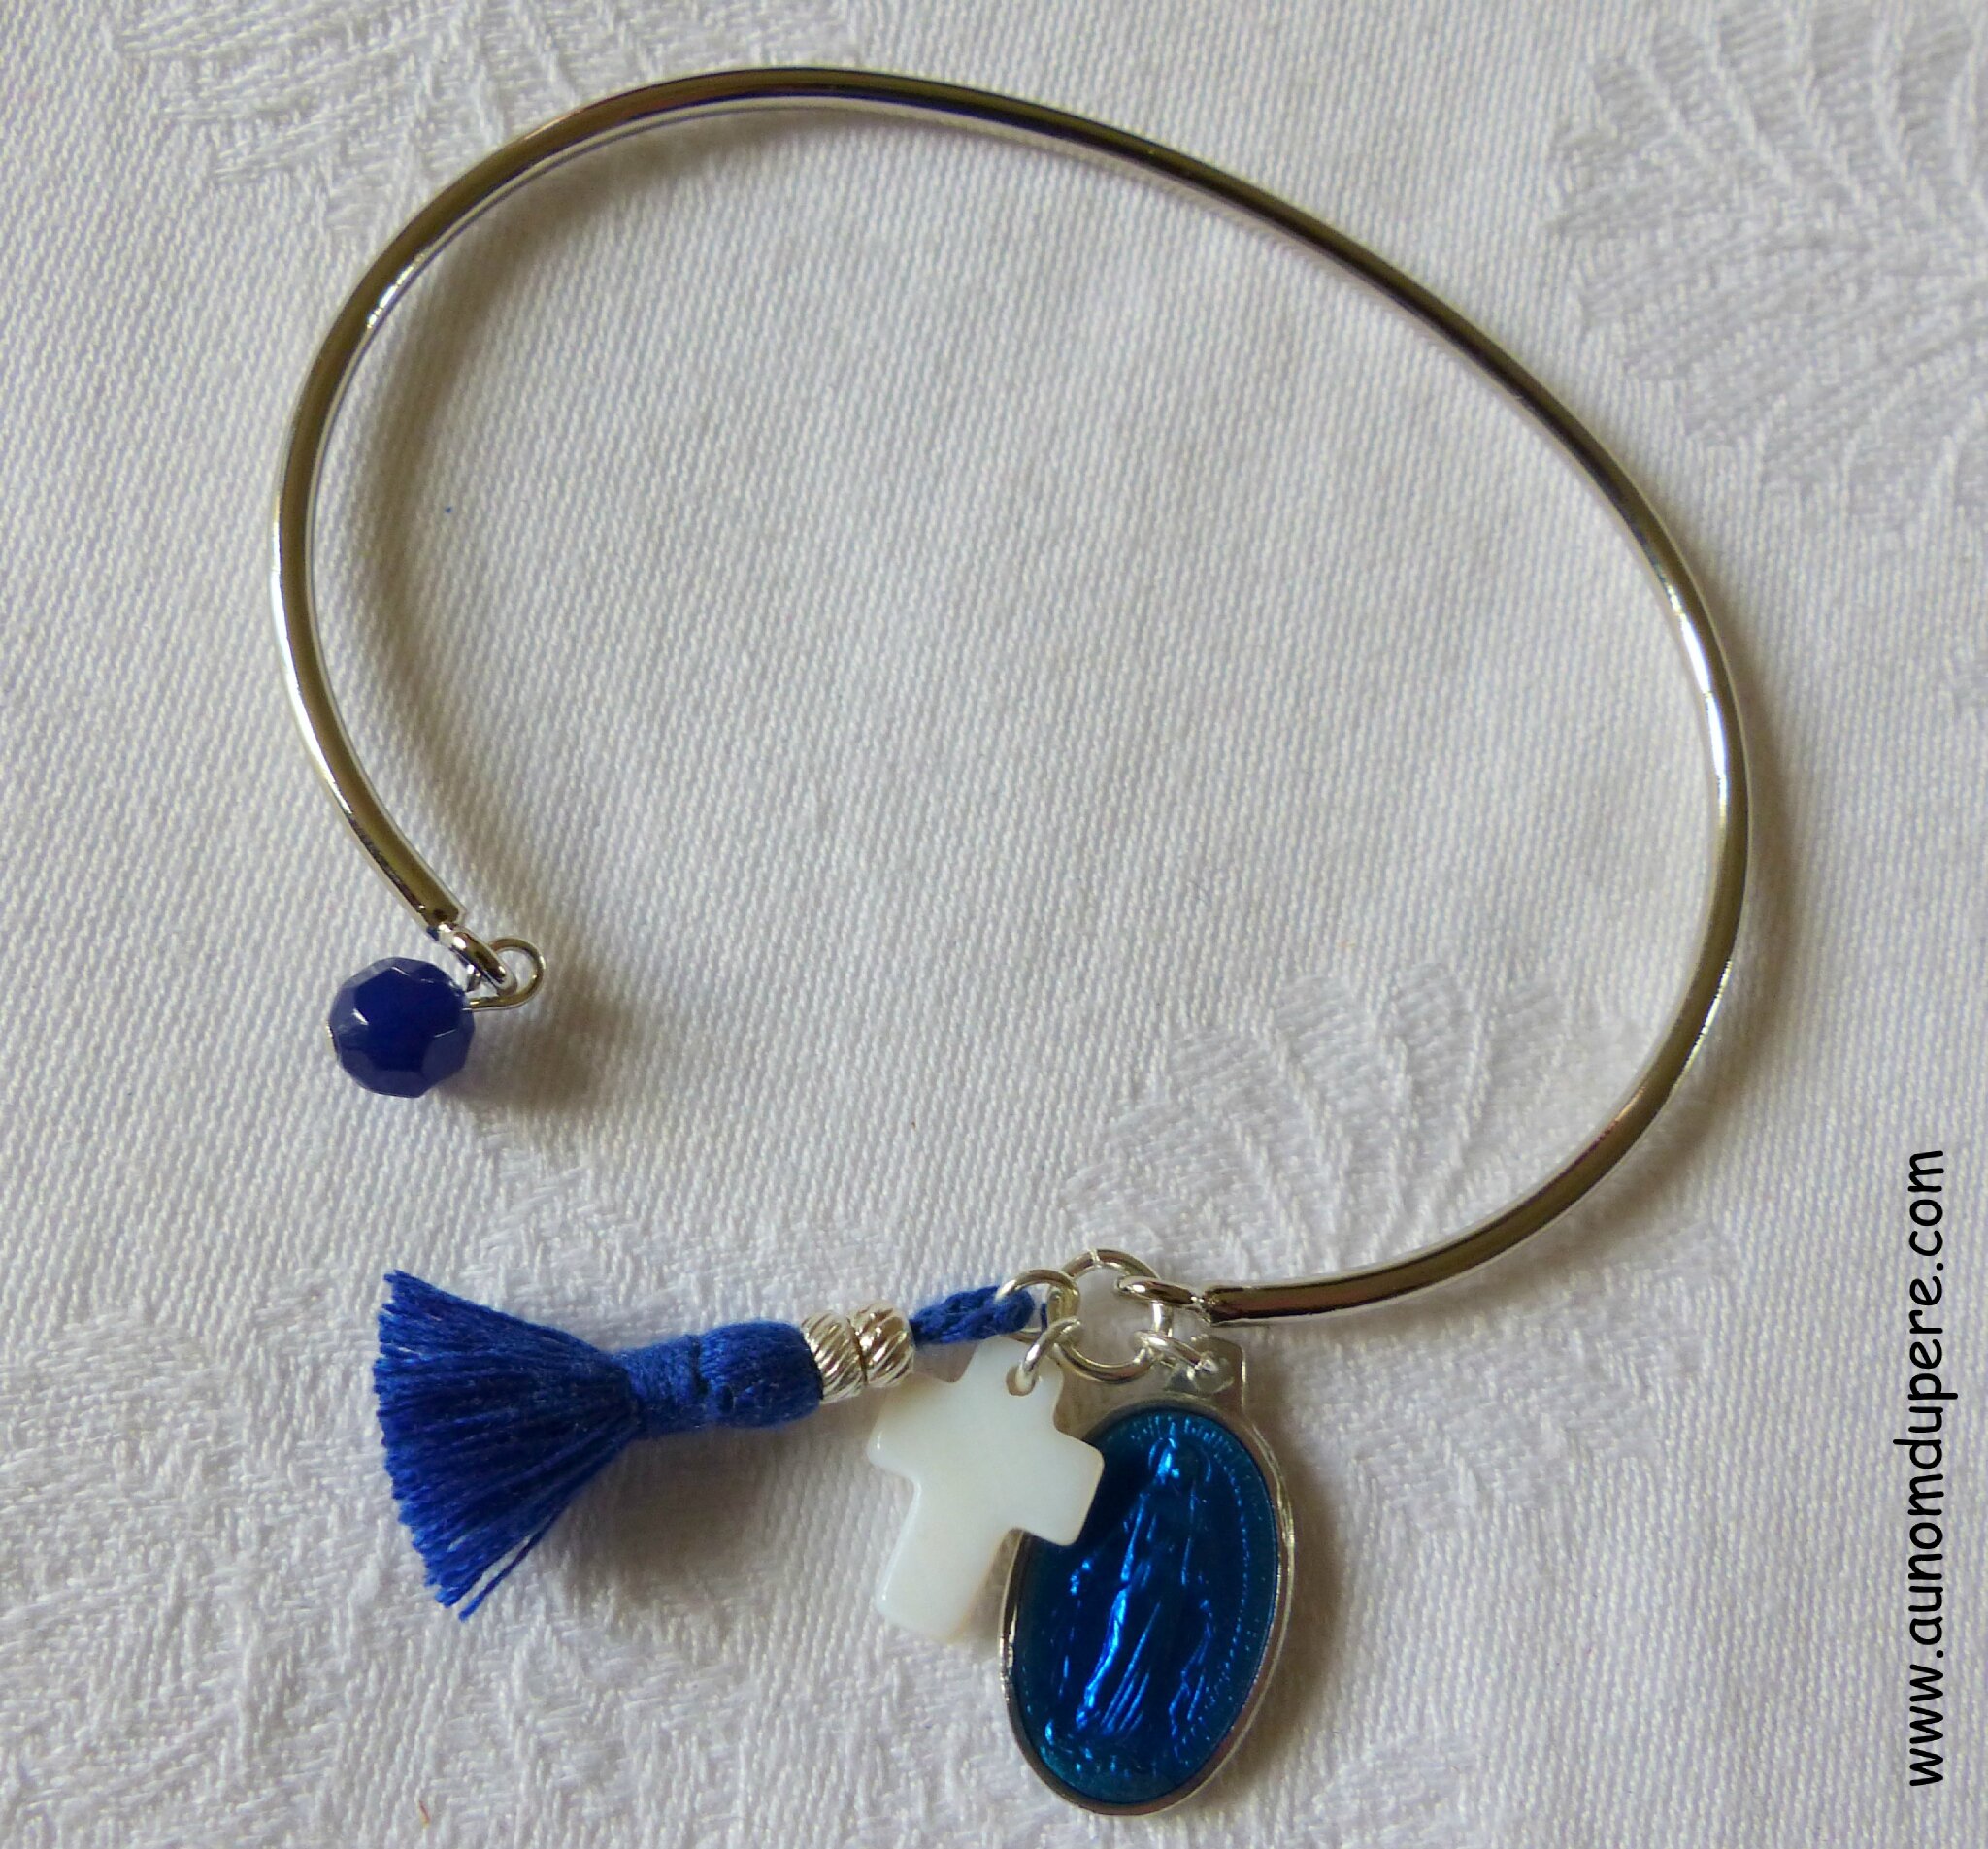 Bracelet de Nazareth (bleu nuit et argenté) - 16 €